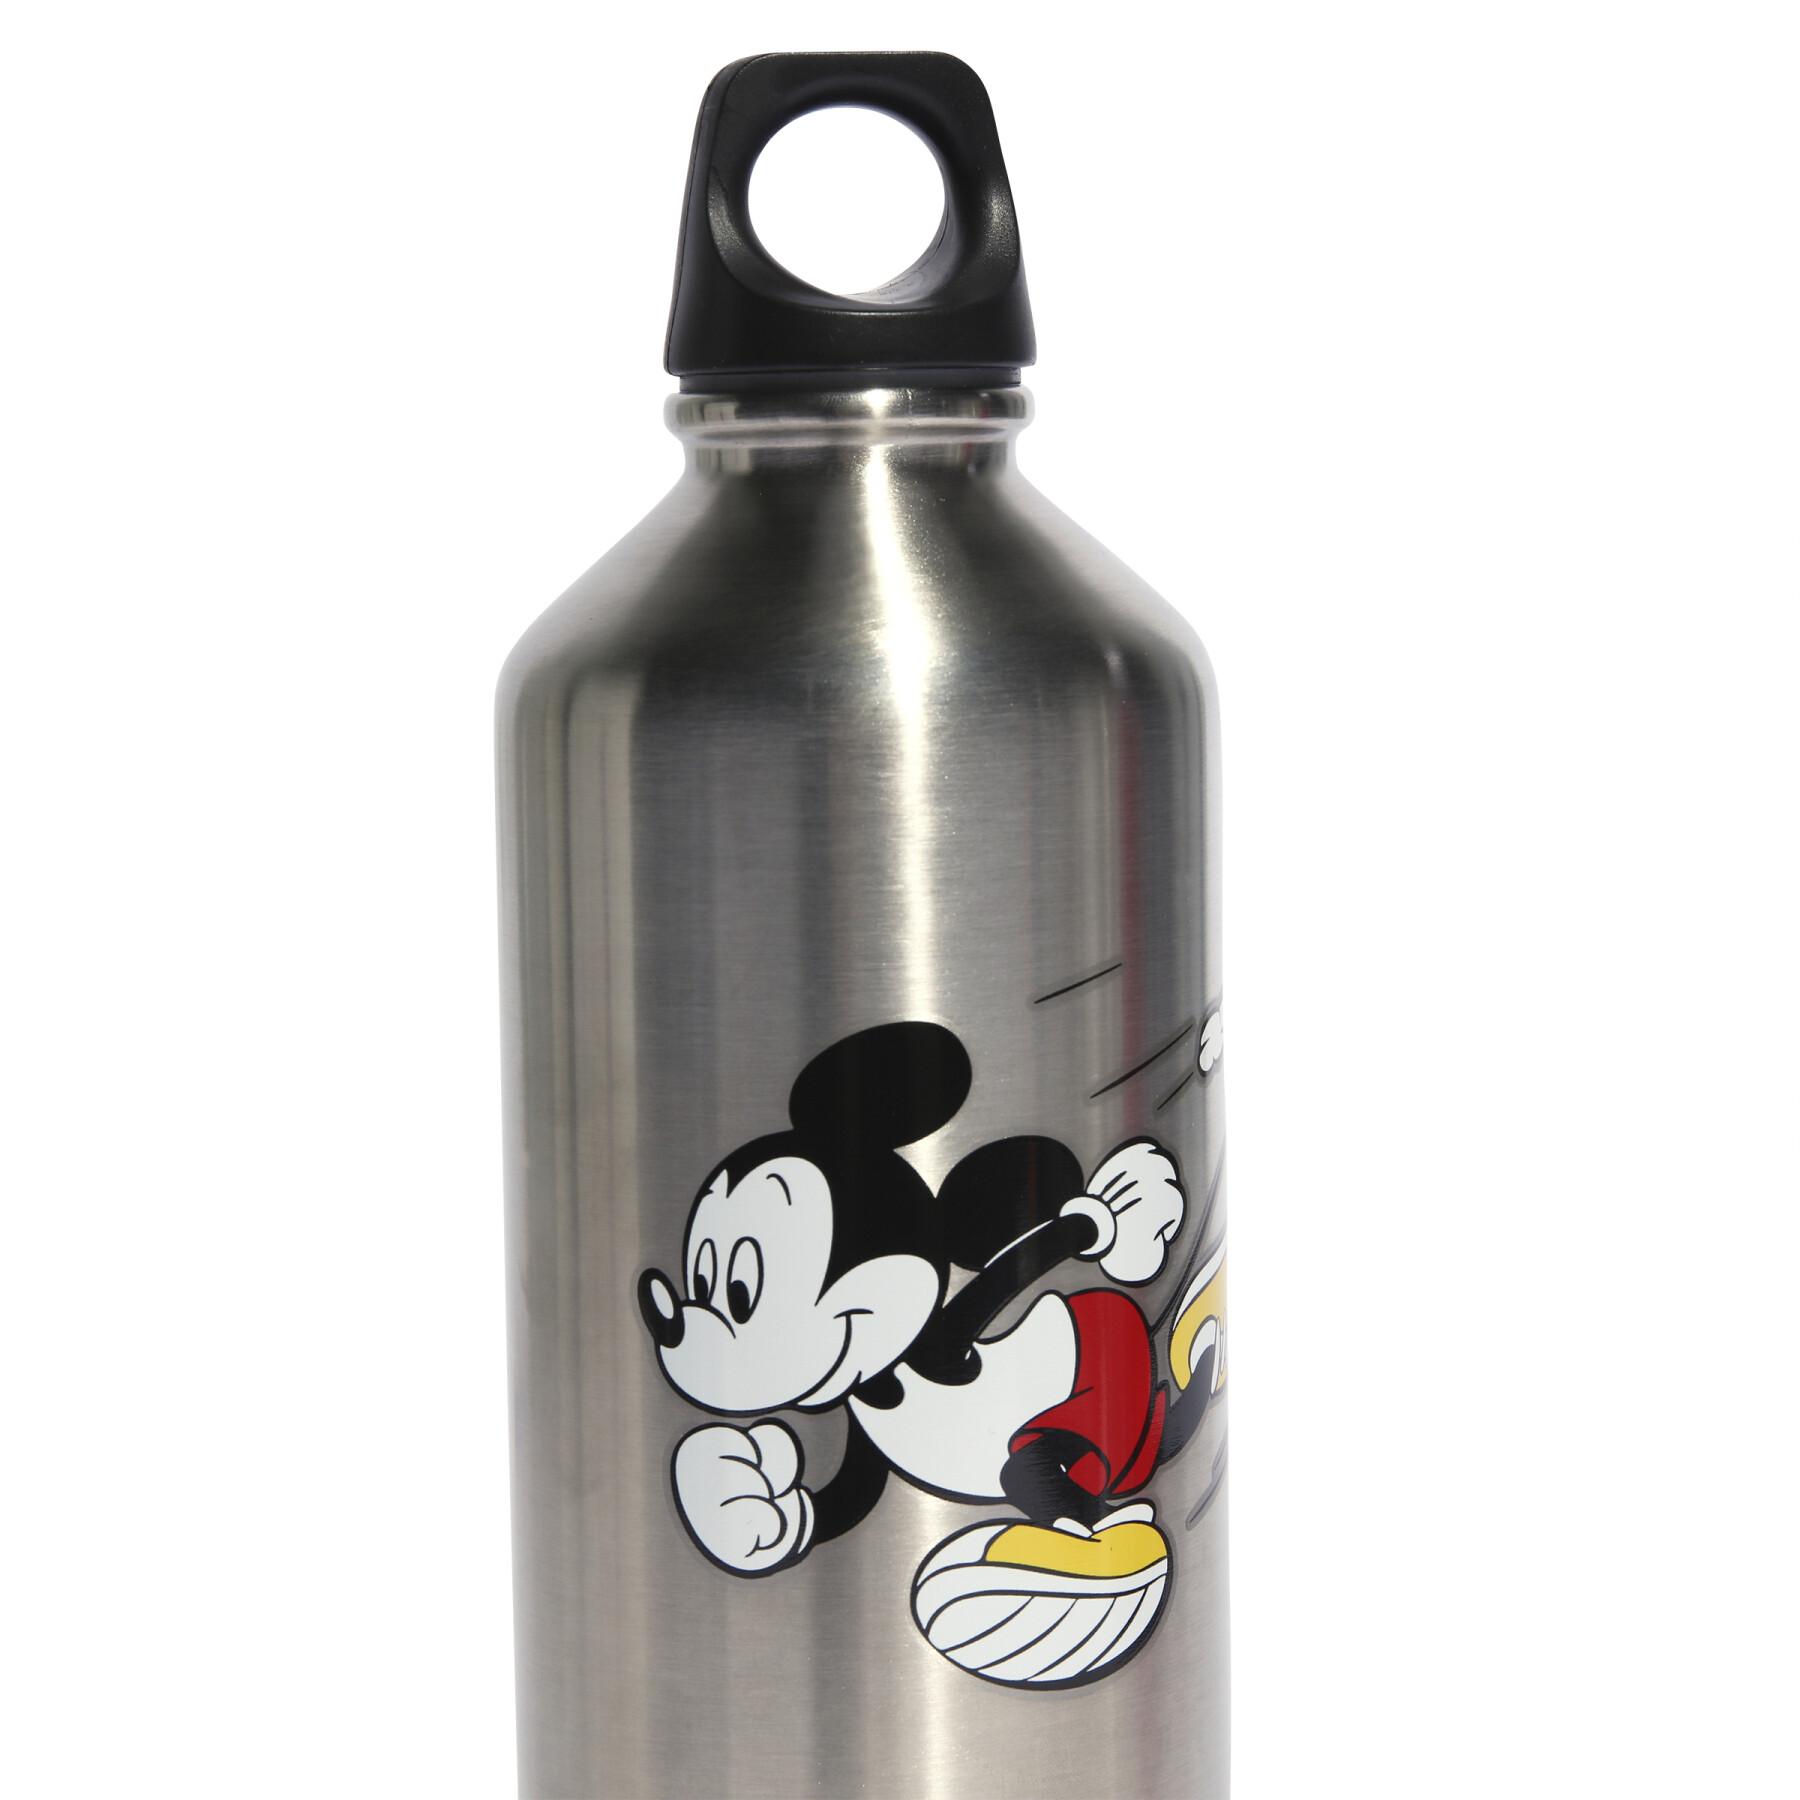 Bottiglia in acciaio per bambini adidas Disney Mickey Mouse 0.75 L